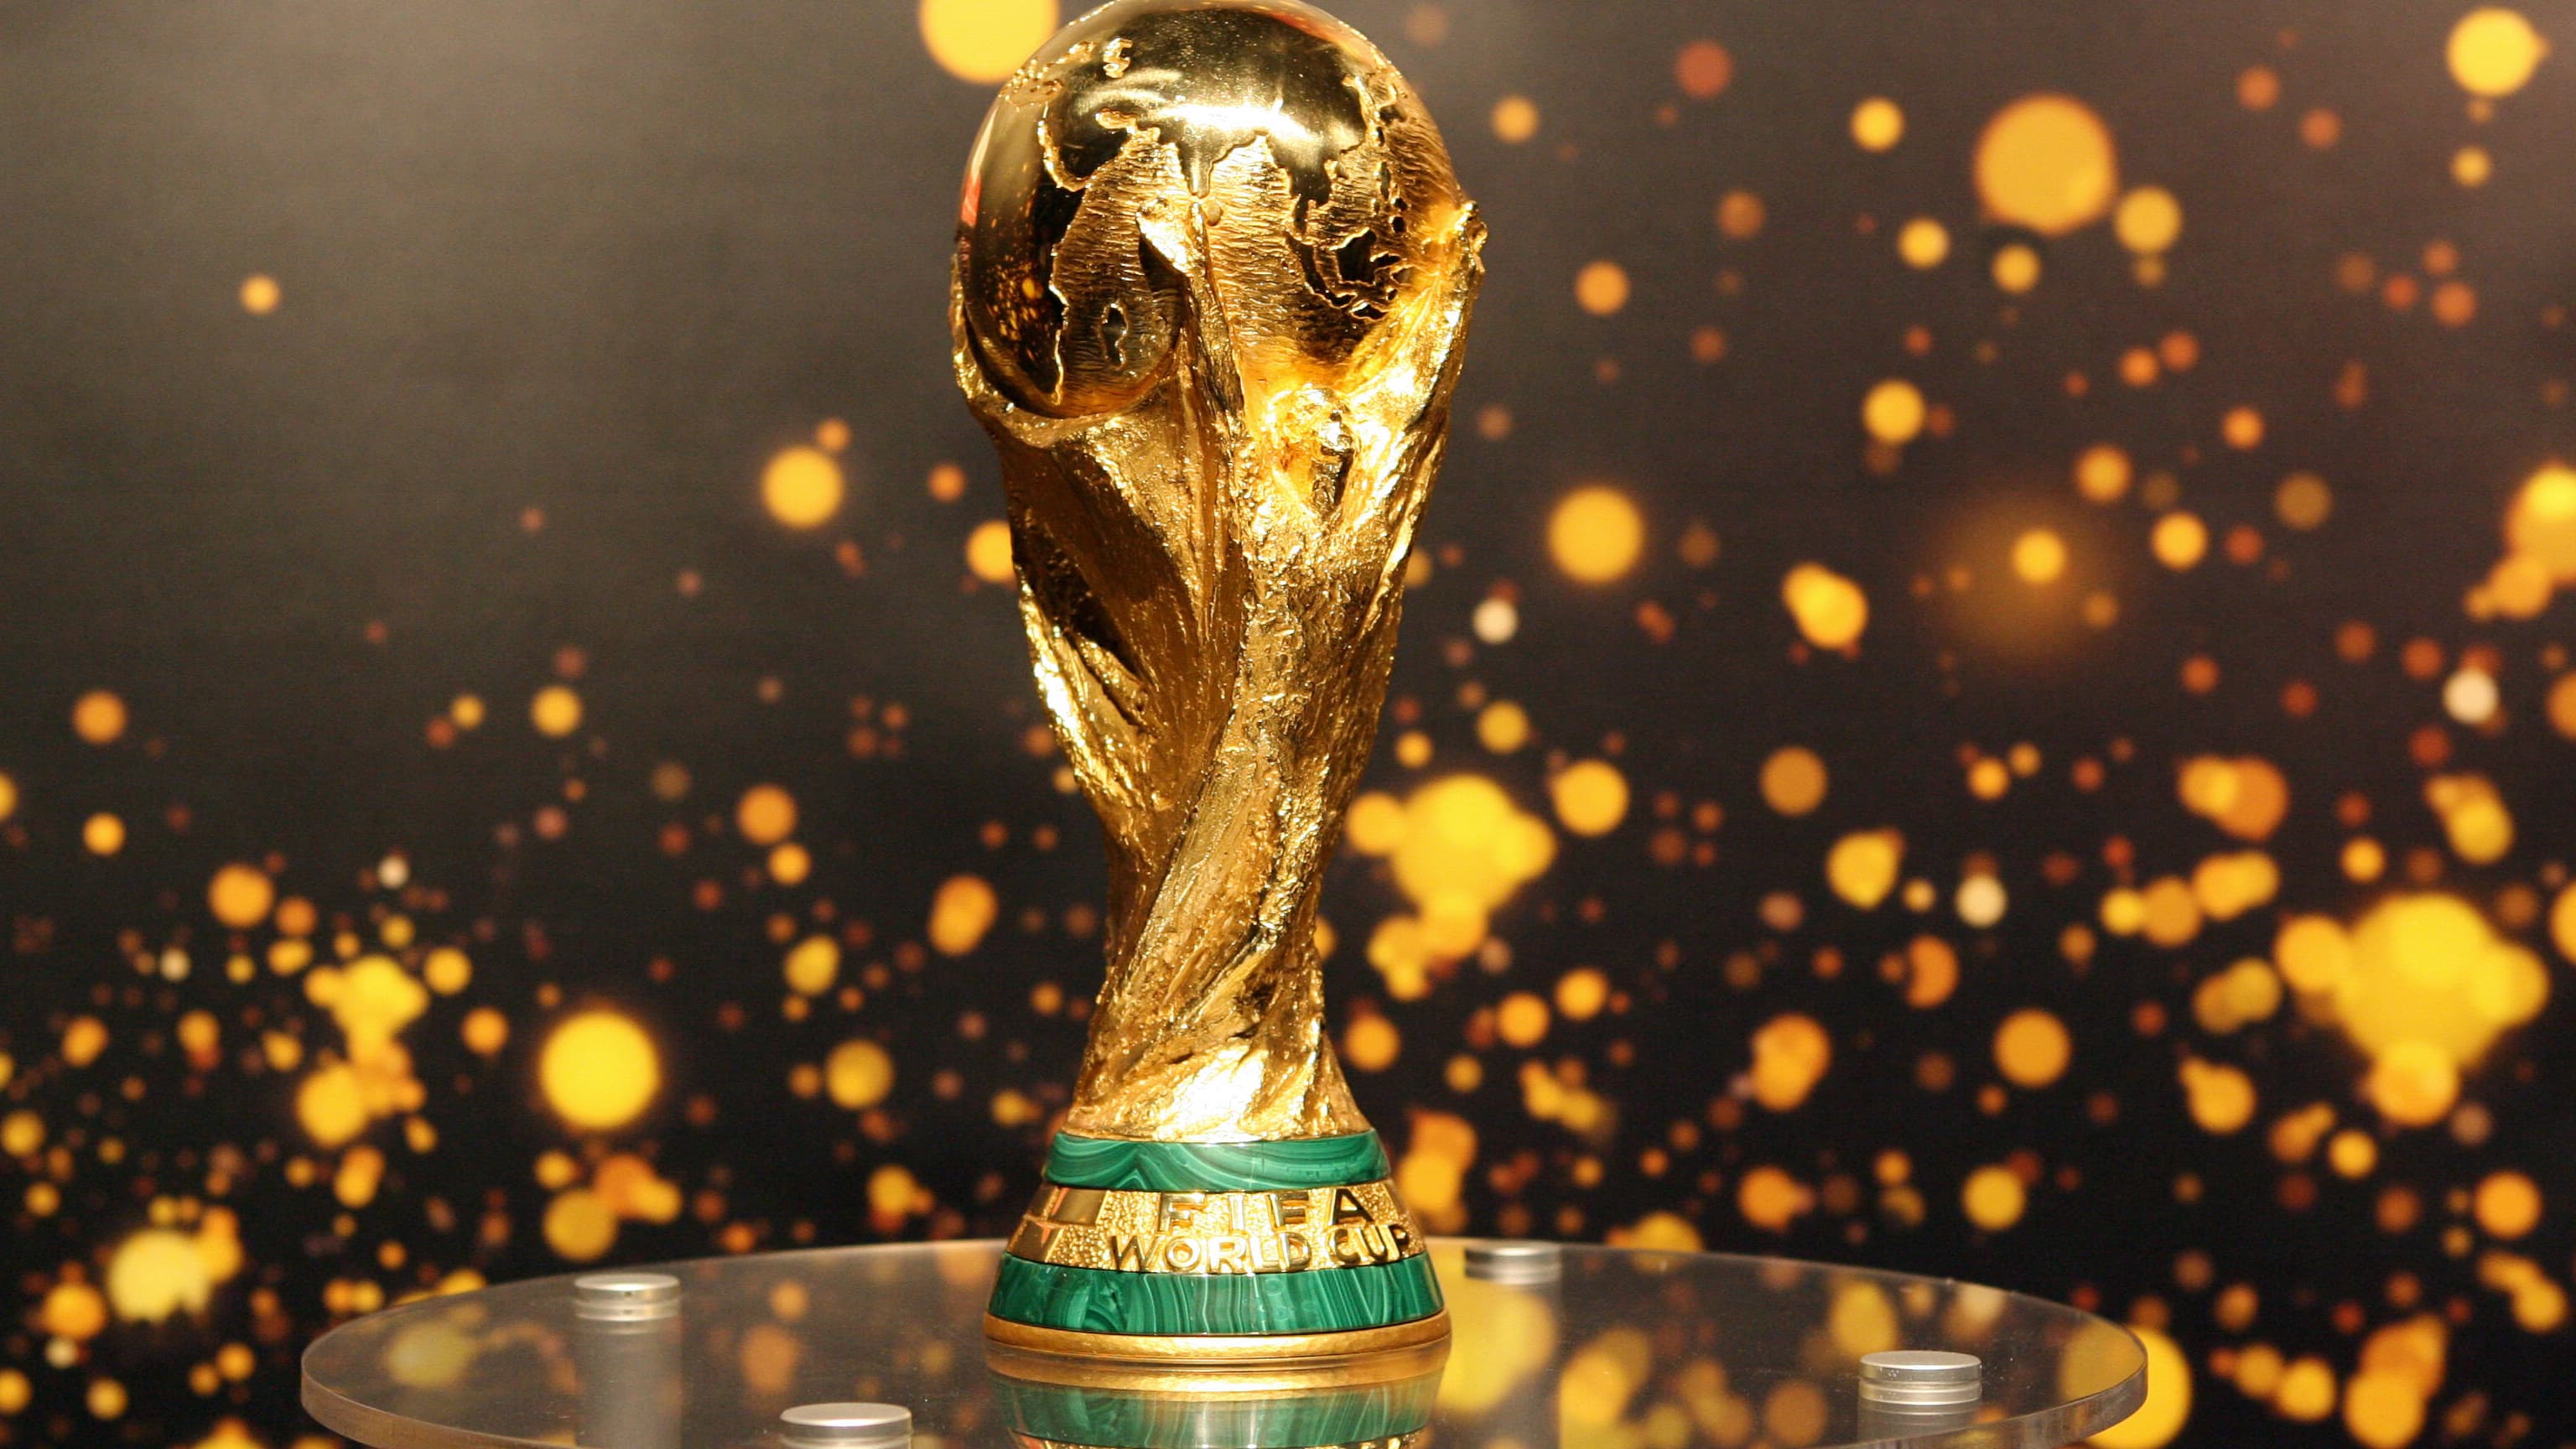 Voici “rêve” le ballon adidas de la finale de la Coupe du monde 2022